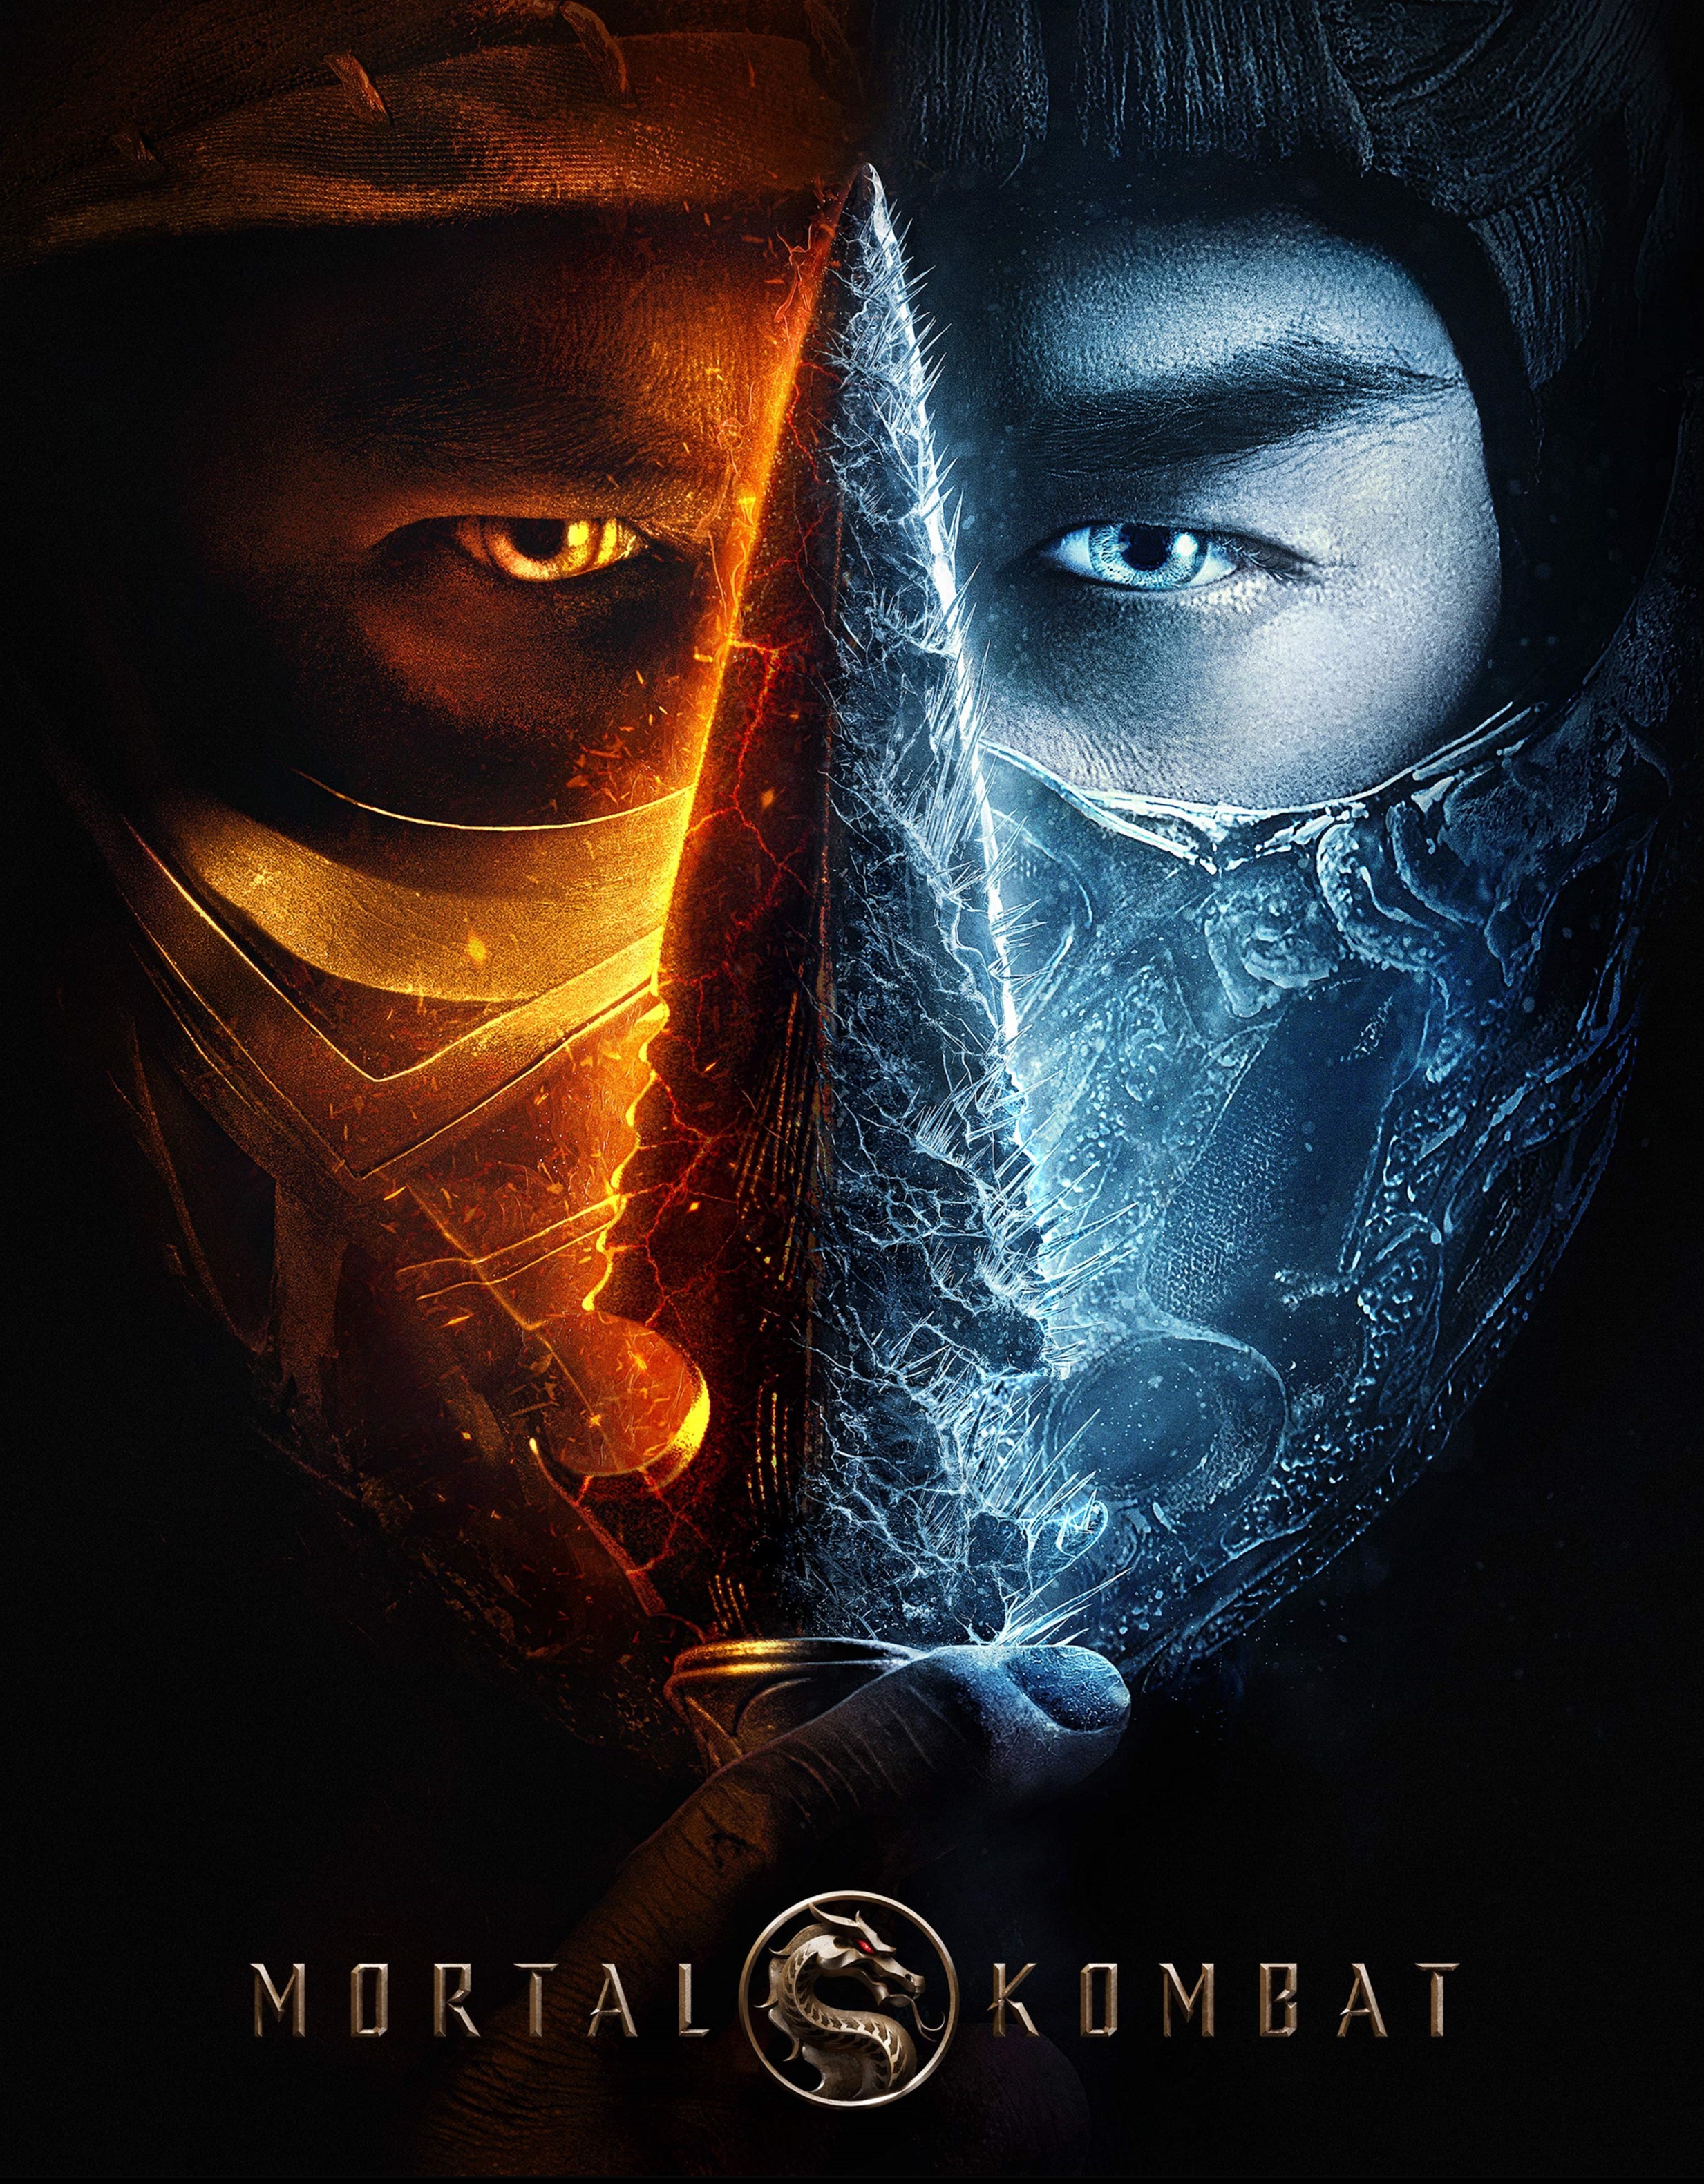 Stiahni si Filmy CZ/SK dabing Mortal Kombat (2021)(CZ/EN)(1080p FullHD) = CSFD 60%